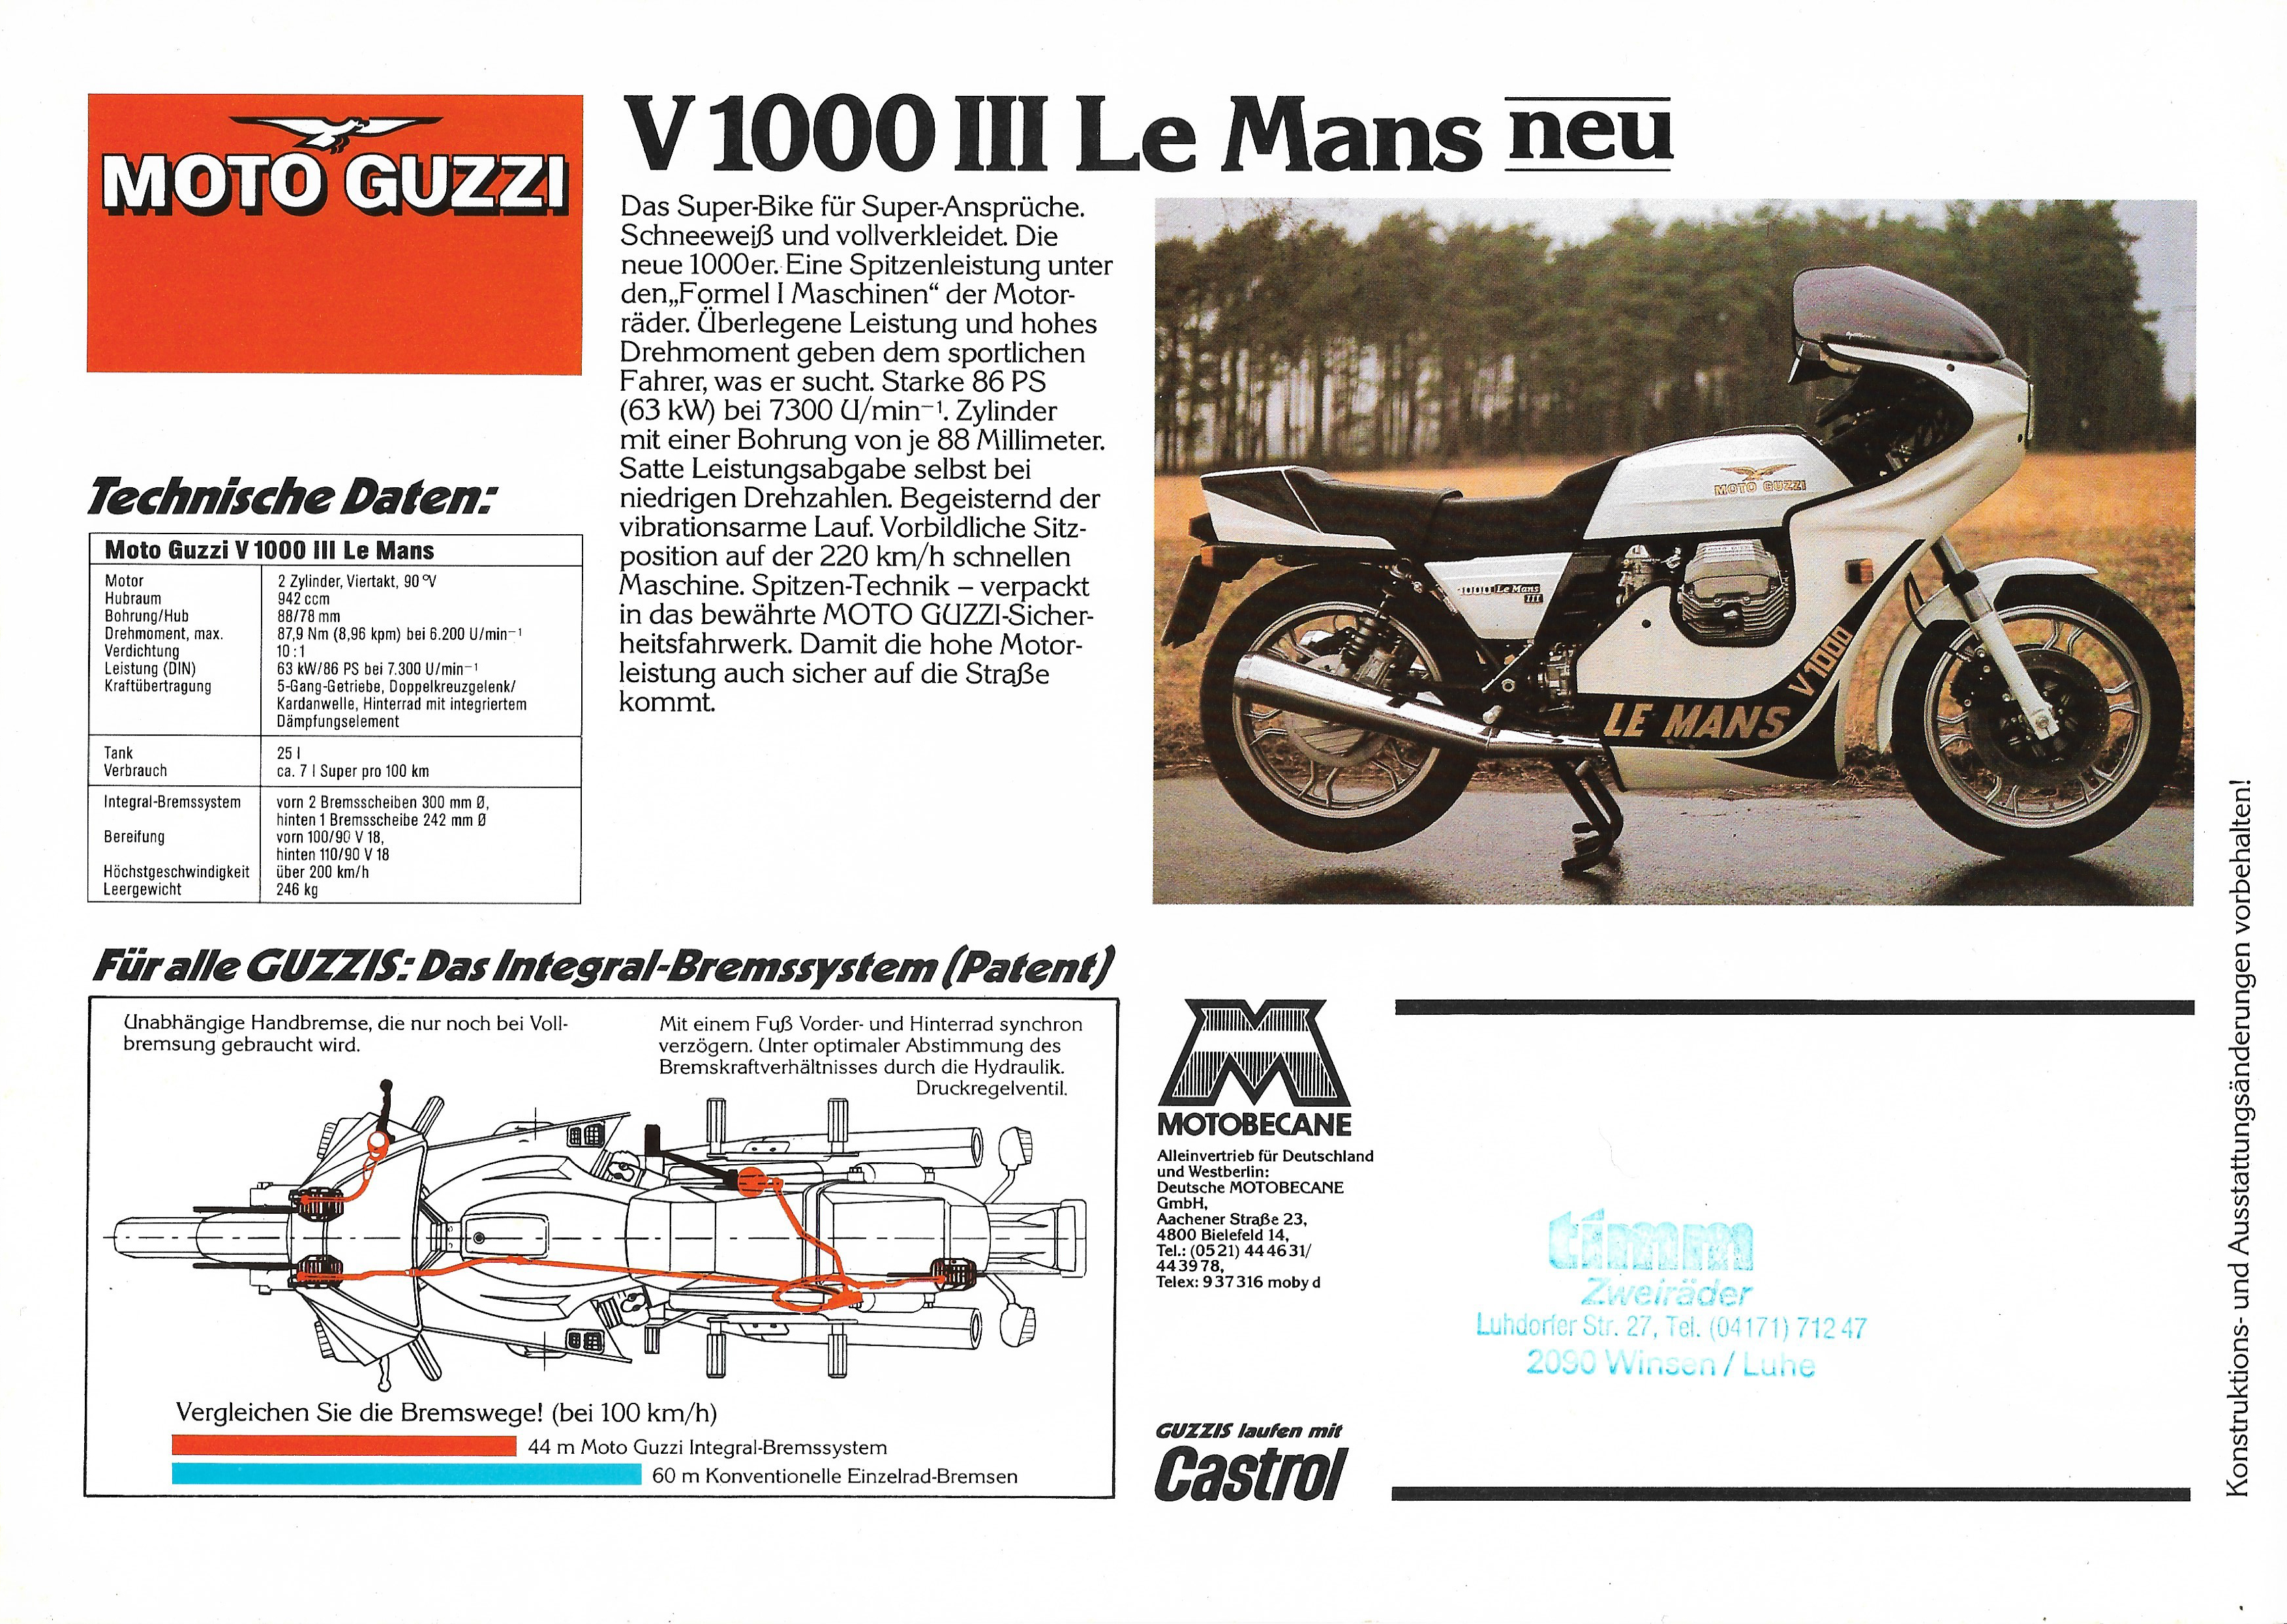 1977 Moto Guzzi V 1000 I Convert 850 T3 FB 850 LE Mans Brochure B5748 